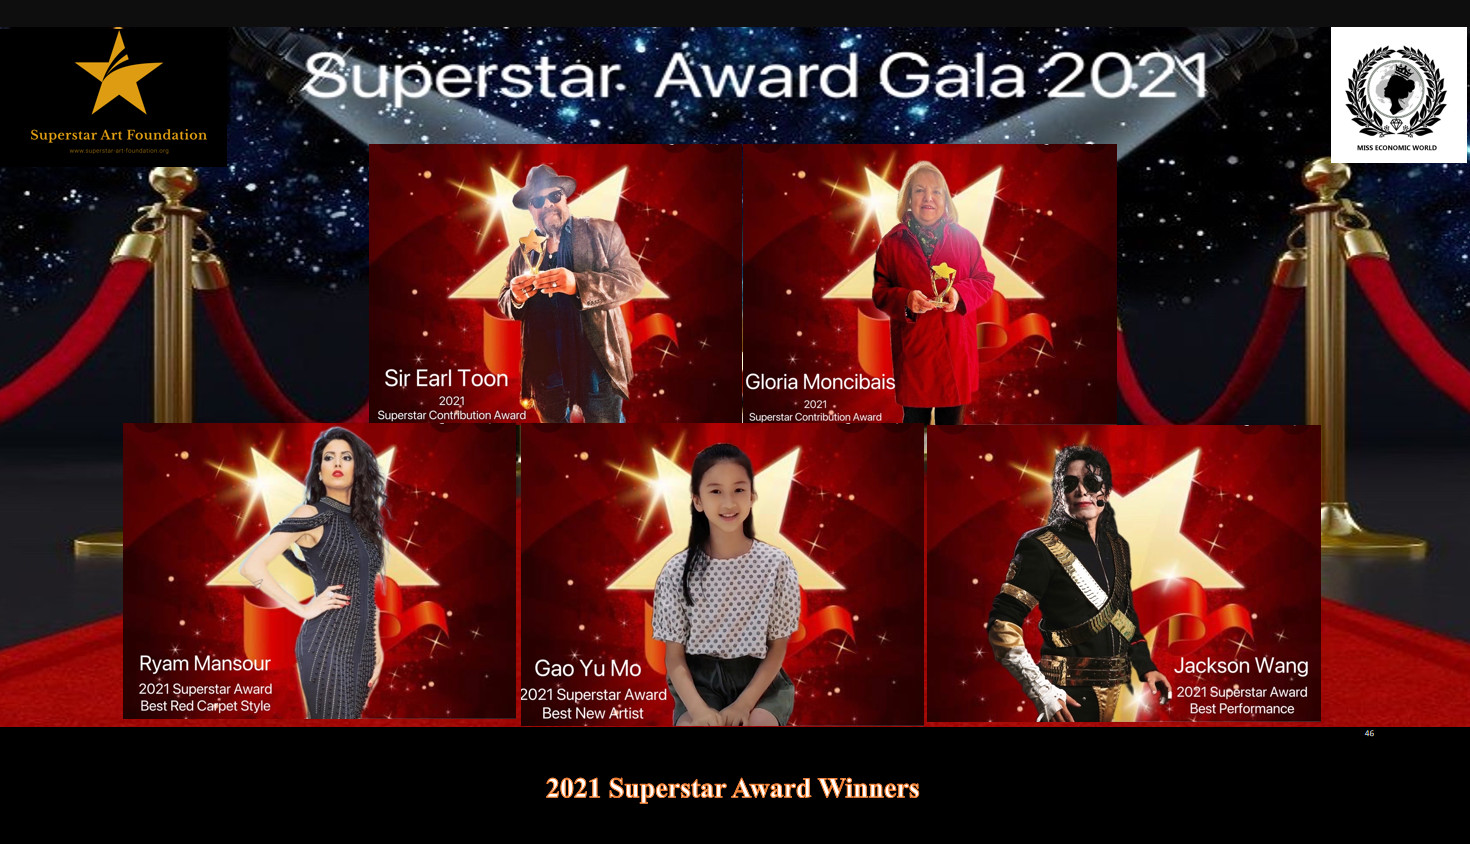 Superstar award 2021 winners announcement